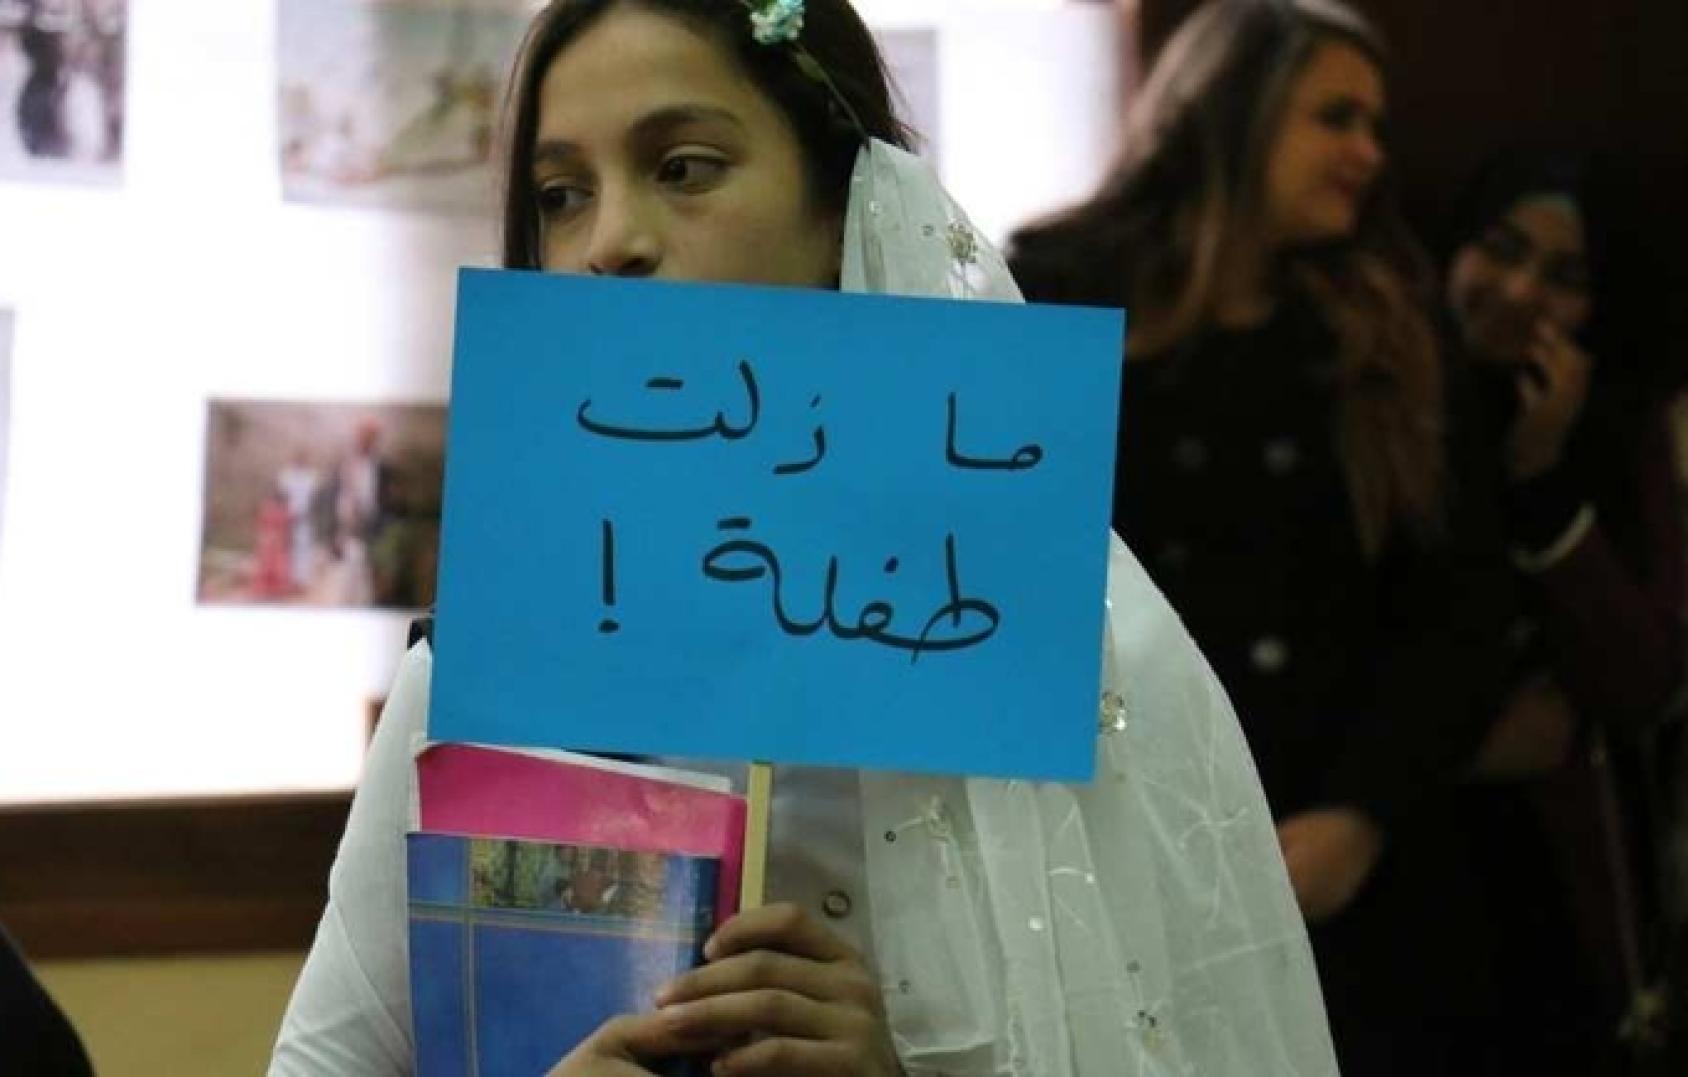 فتاة صغيرة ترتدي فستان زفاف وتحمل لافتة كتب عليها: ما زلت طفلة.